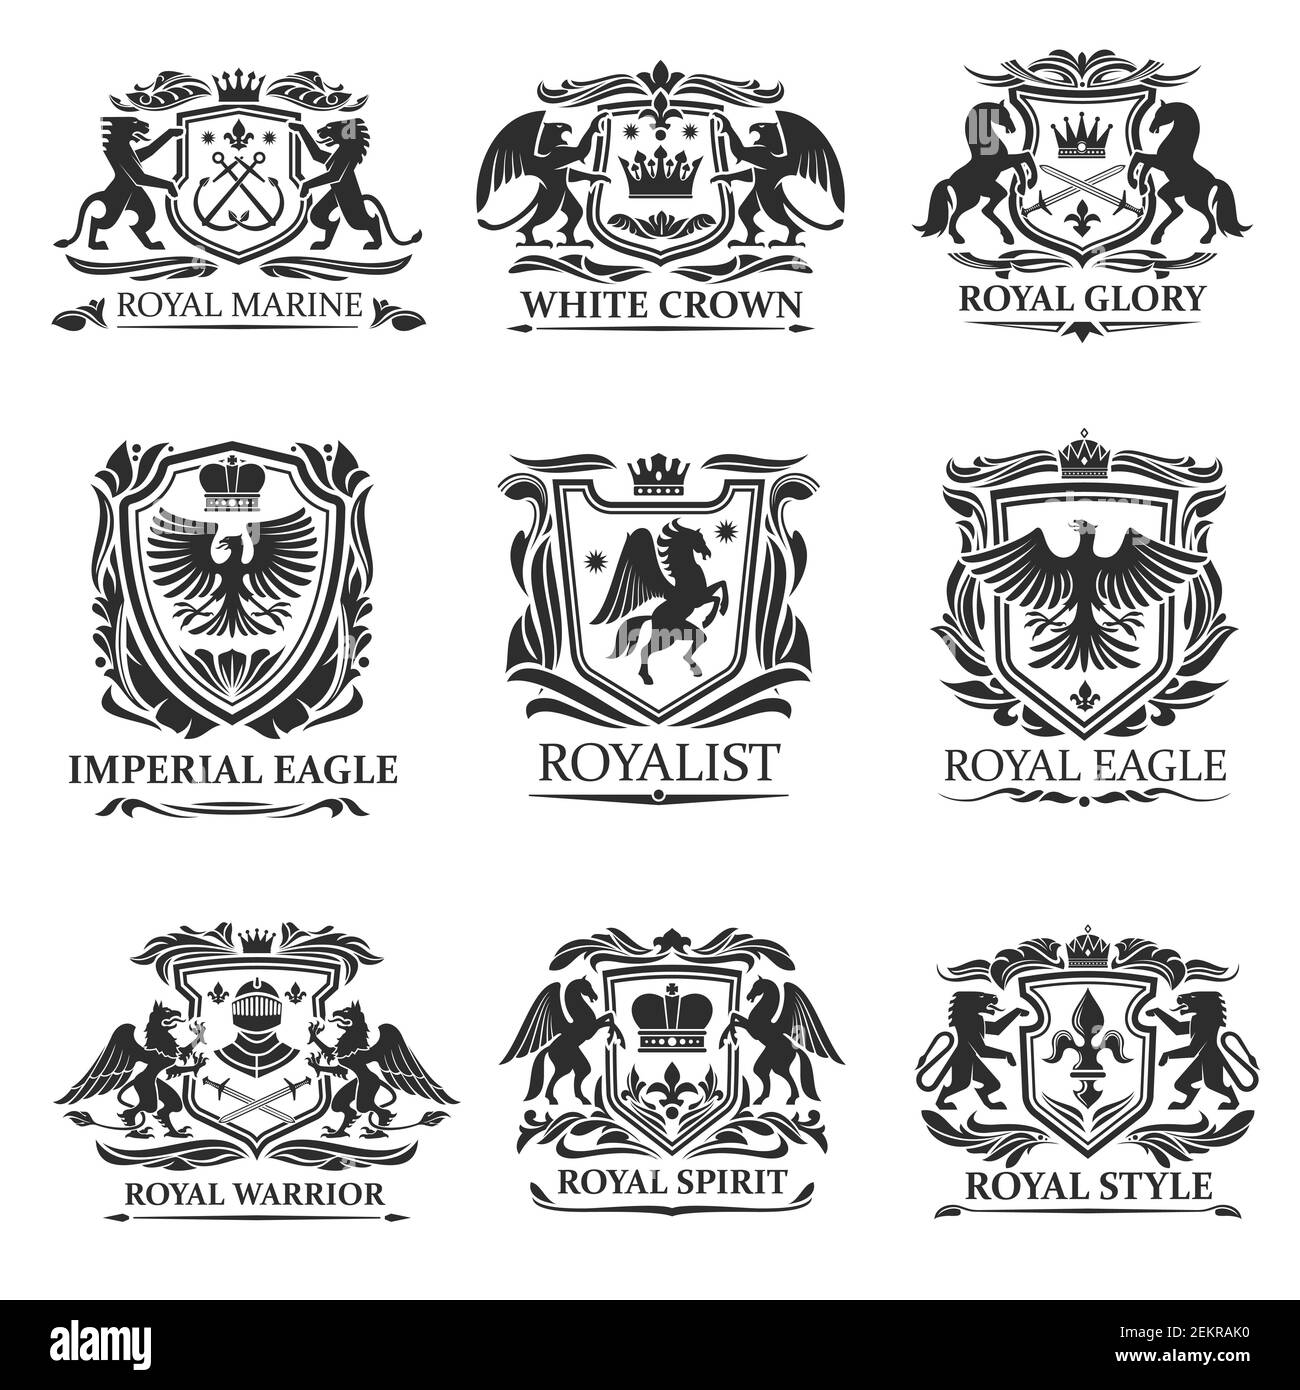 Schild Abzeichen und Embleme Vektor-Design der königlichen Heraldik. Wappen mit Löwen, Adlern und Königskronen, Ritterschwertern, Helmen und Pferden Stock Vektor